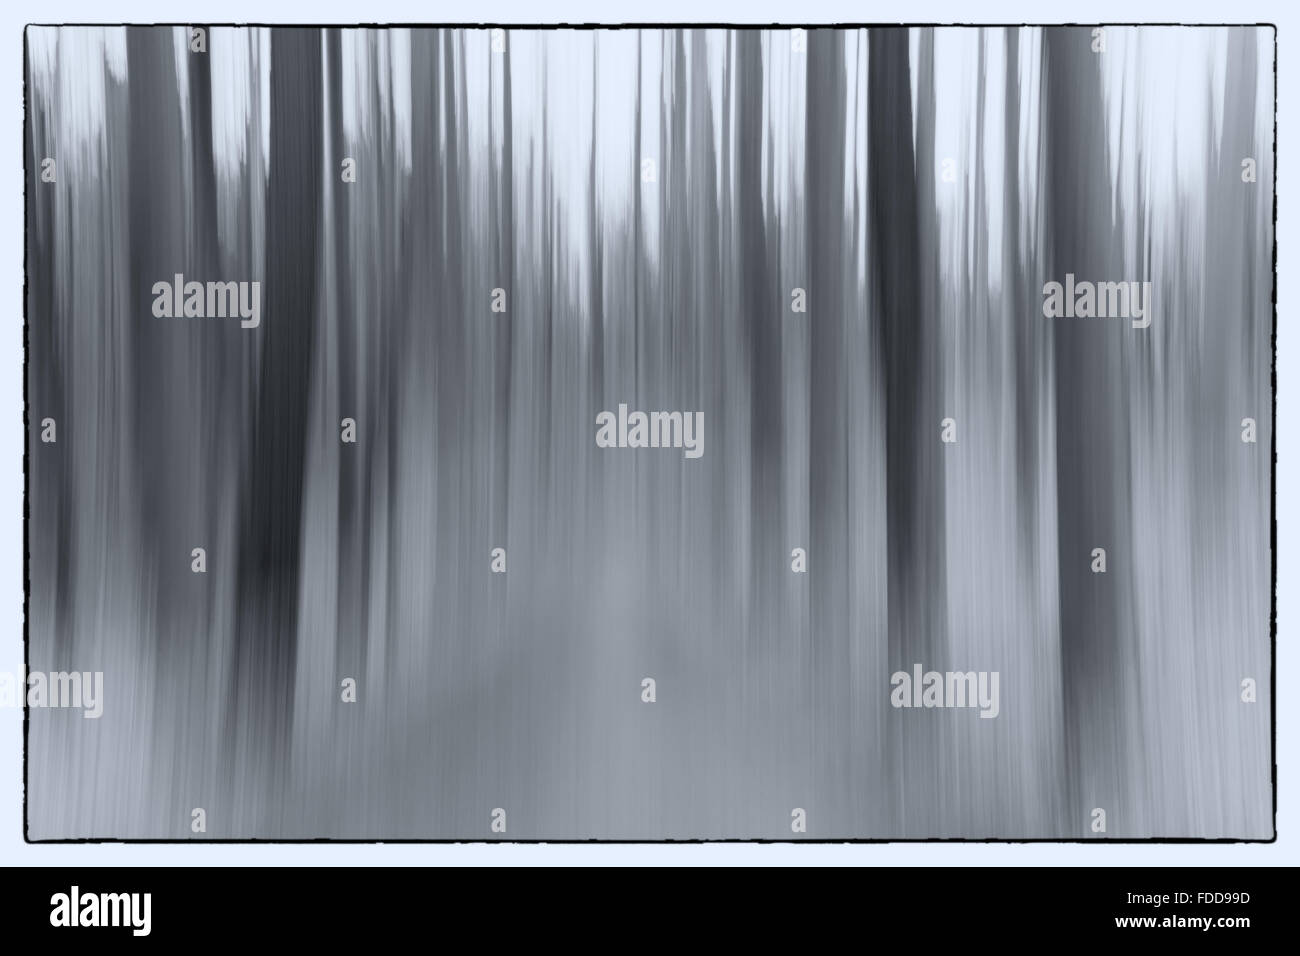 Un resumen fotográfico conceptual utilizando una velocidad de obturación lenta de árboles en un bosque mostrando hojas y árboles Foto de stock